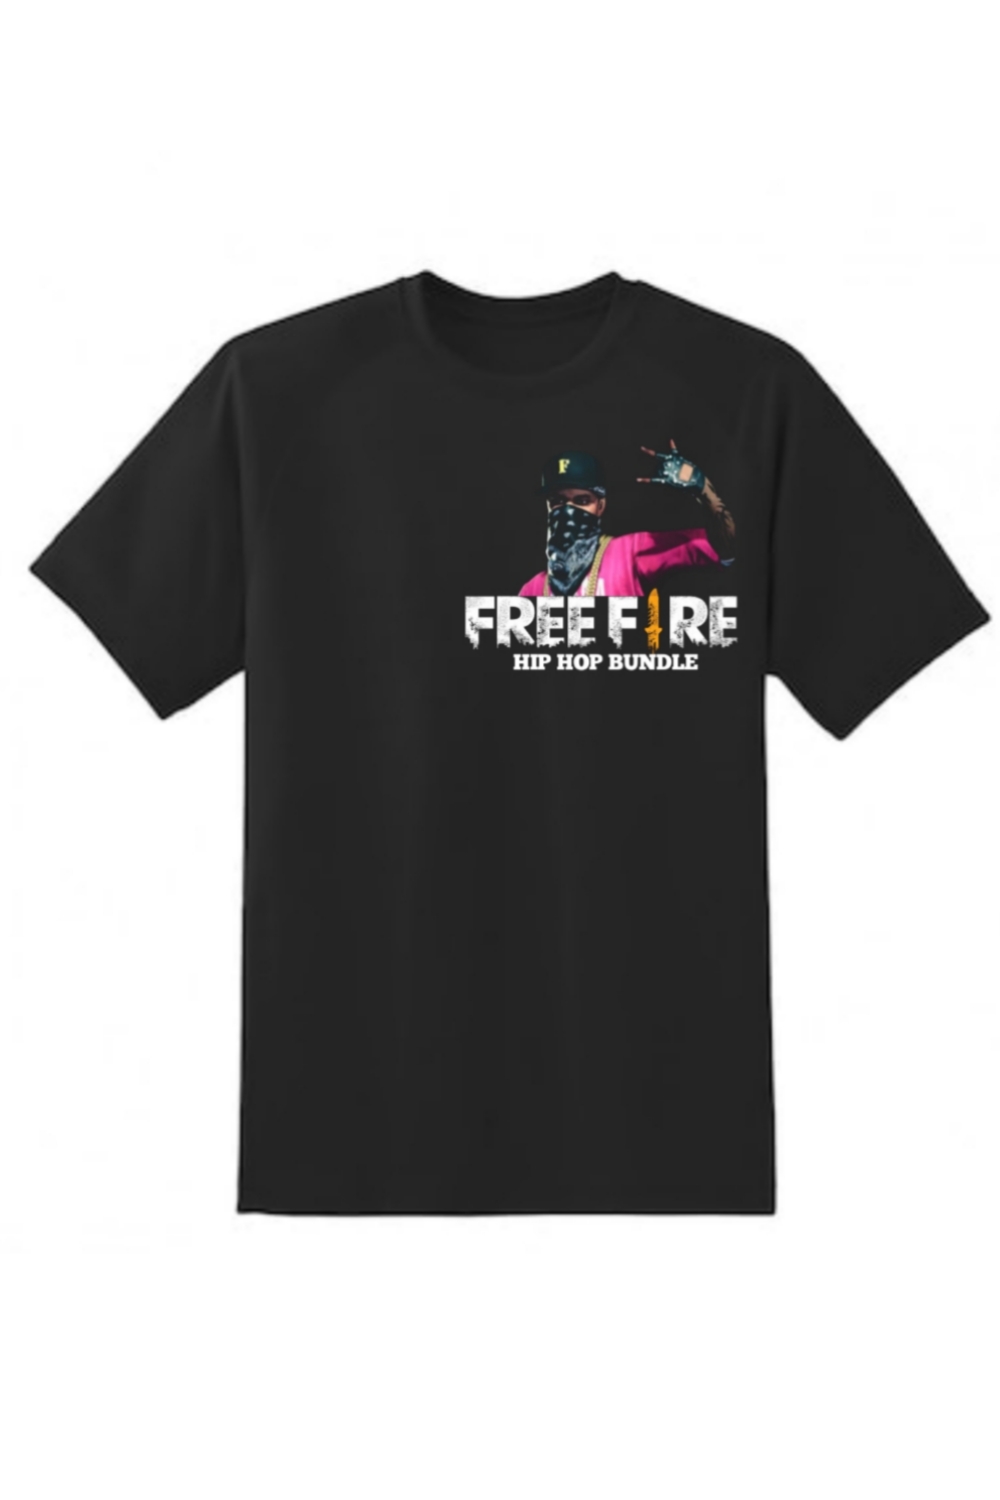 Free fire hip hop bundle T-shirt design pinterest preview image.